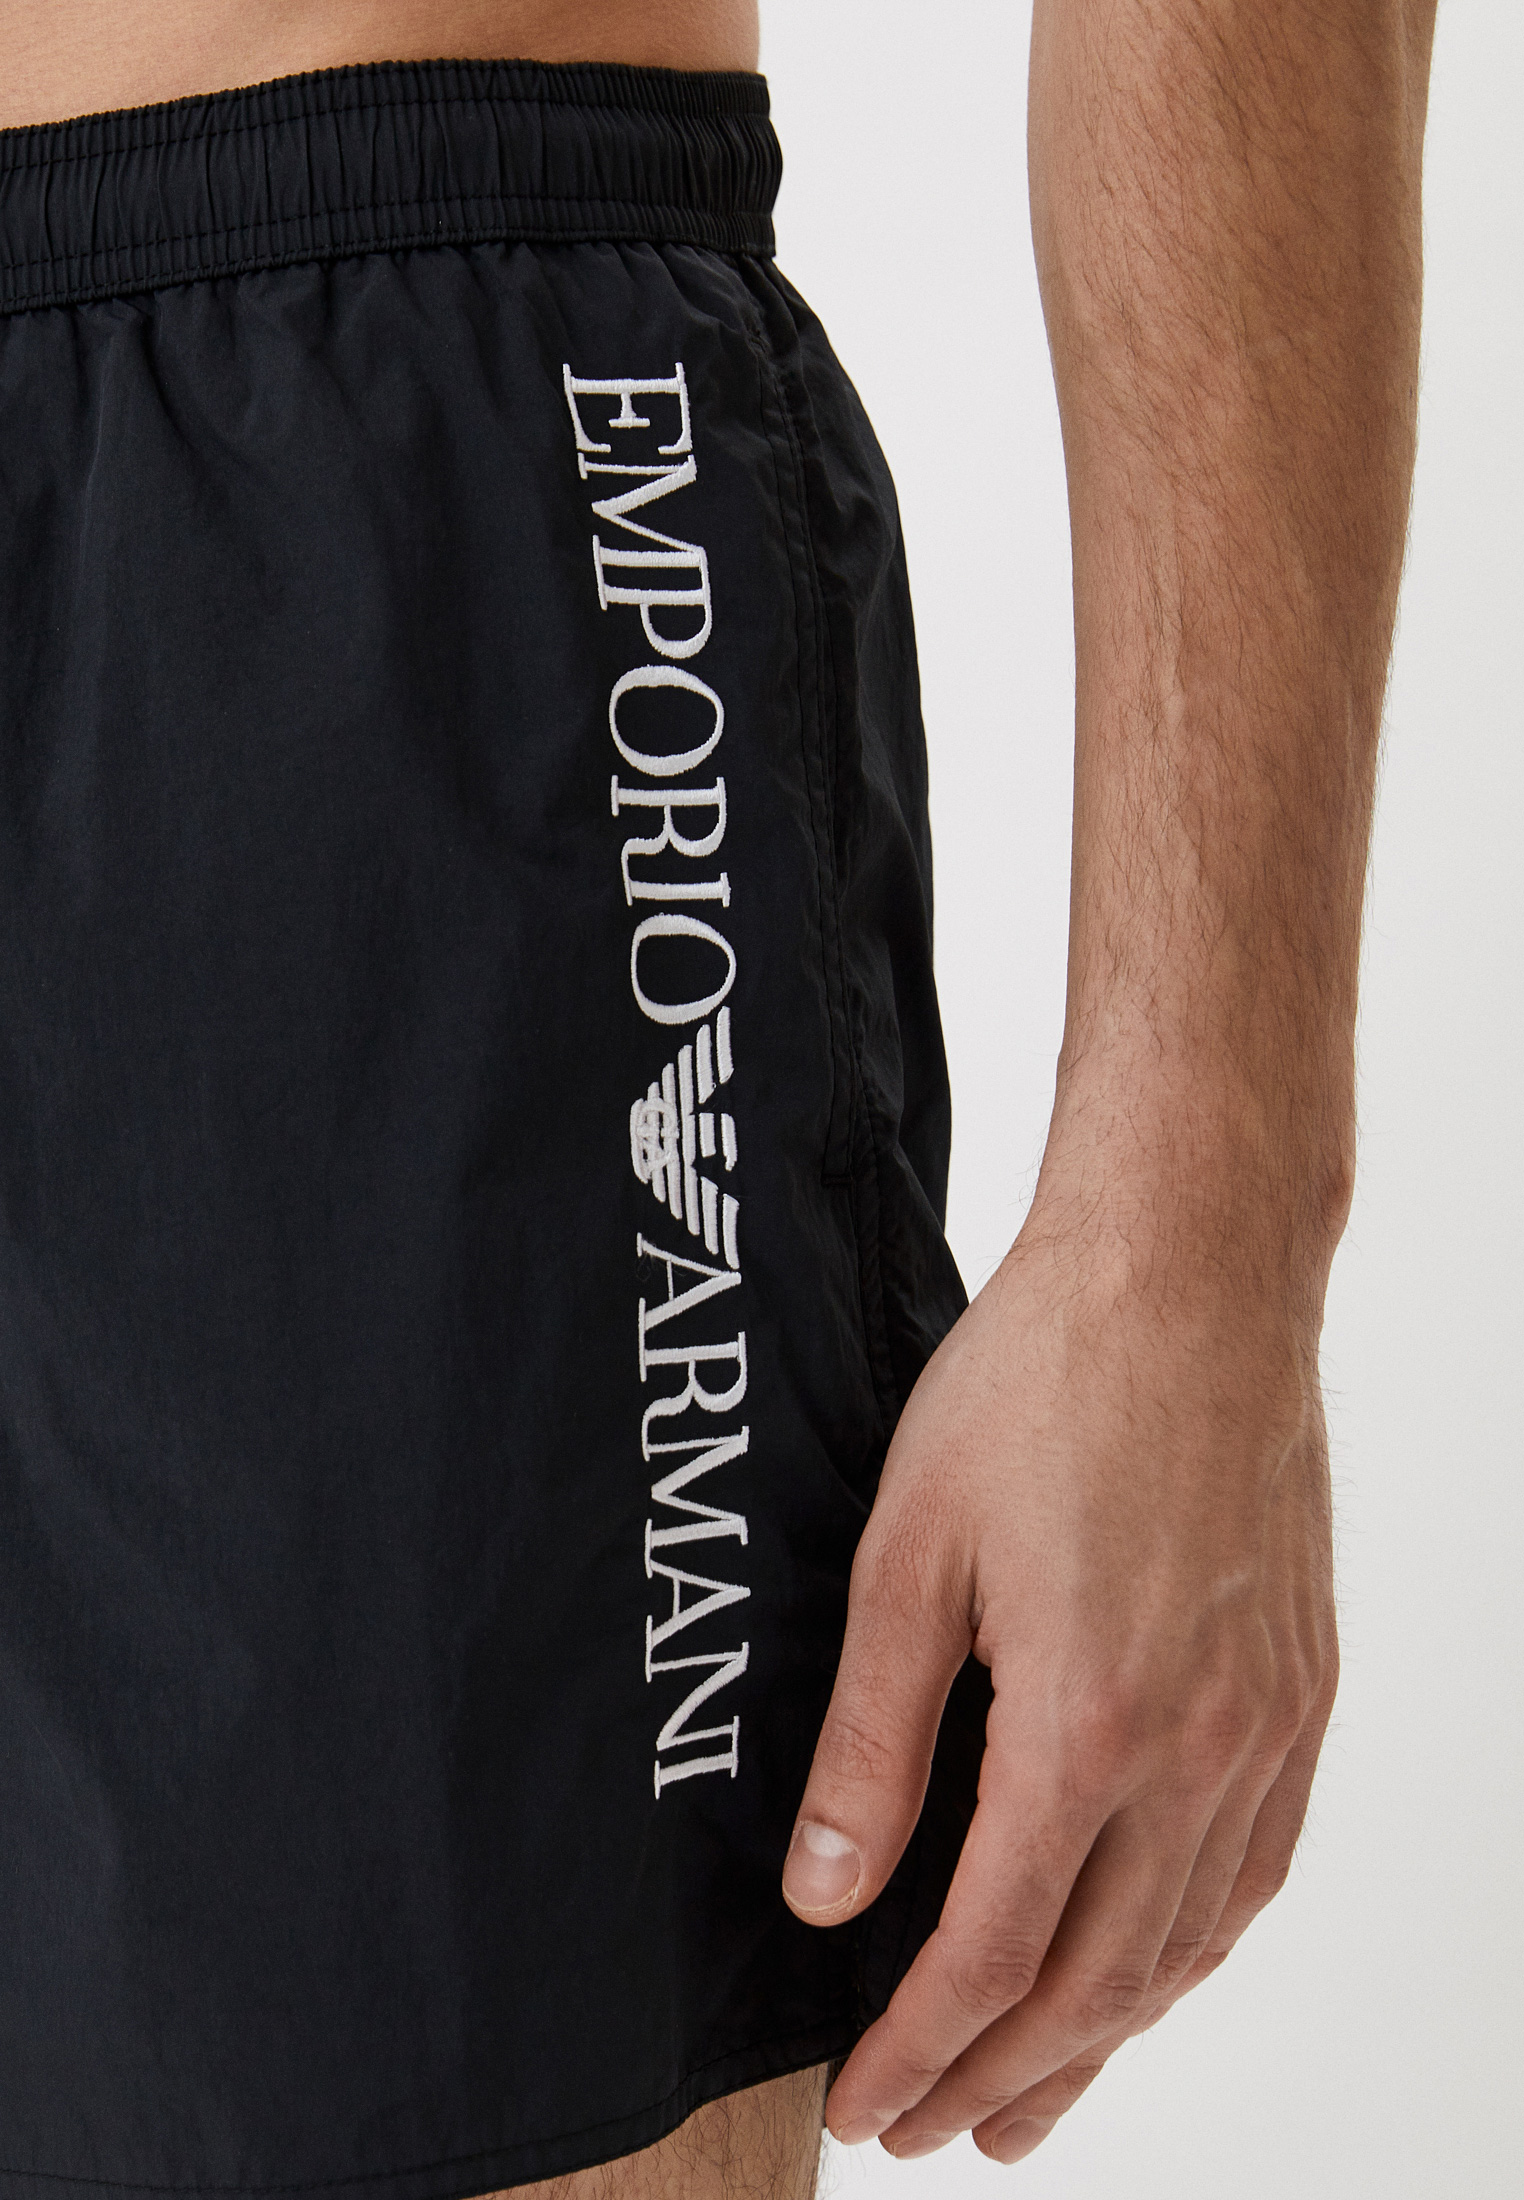 Мужские шорты для плавания Emporio Armani (Эмпорио Армани) 211740 2r422: изображение 6